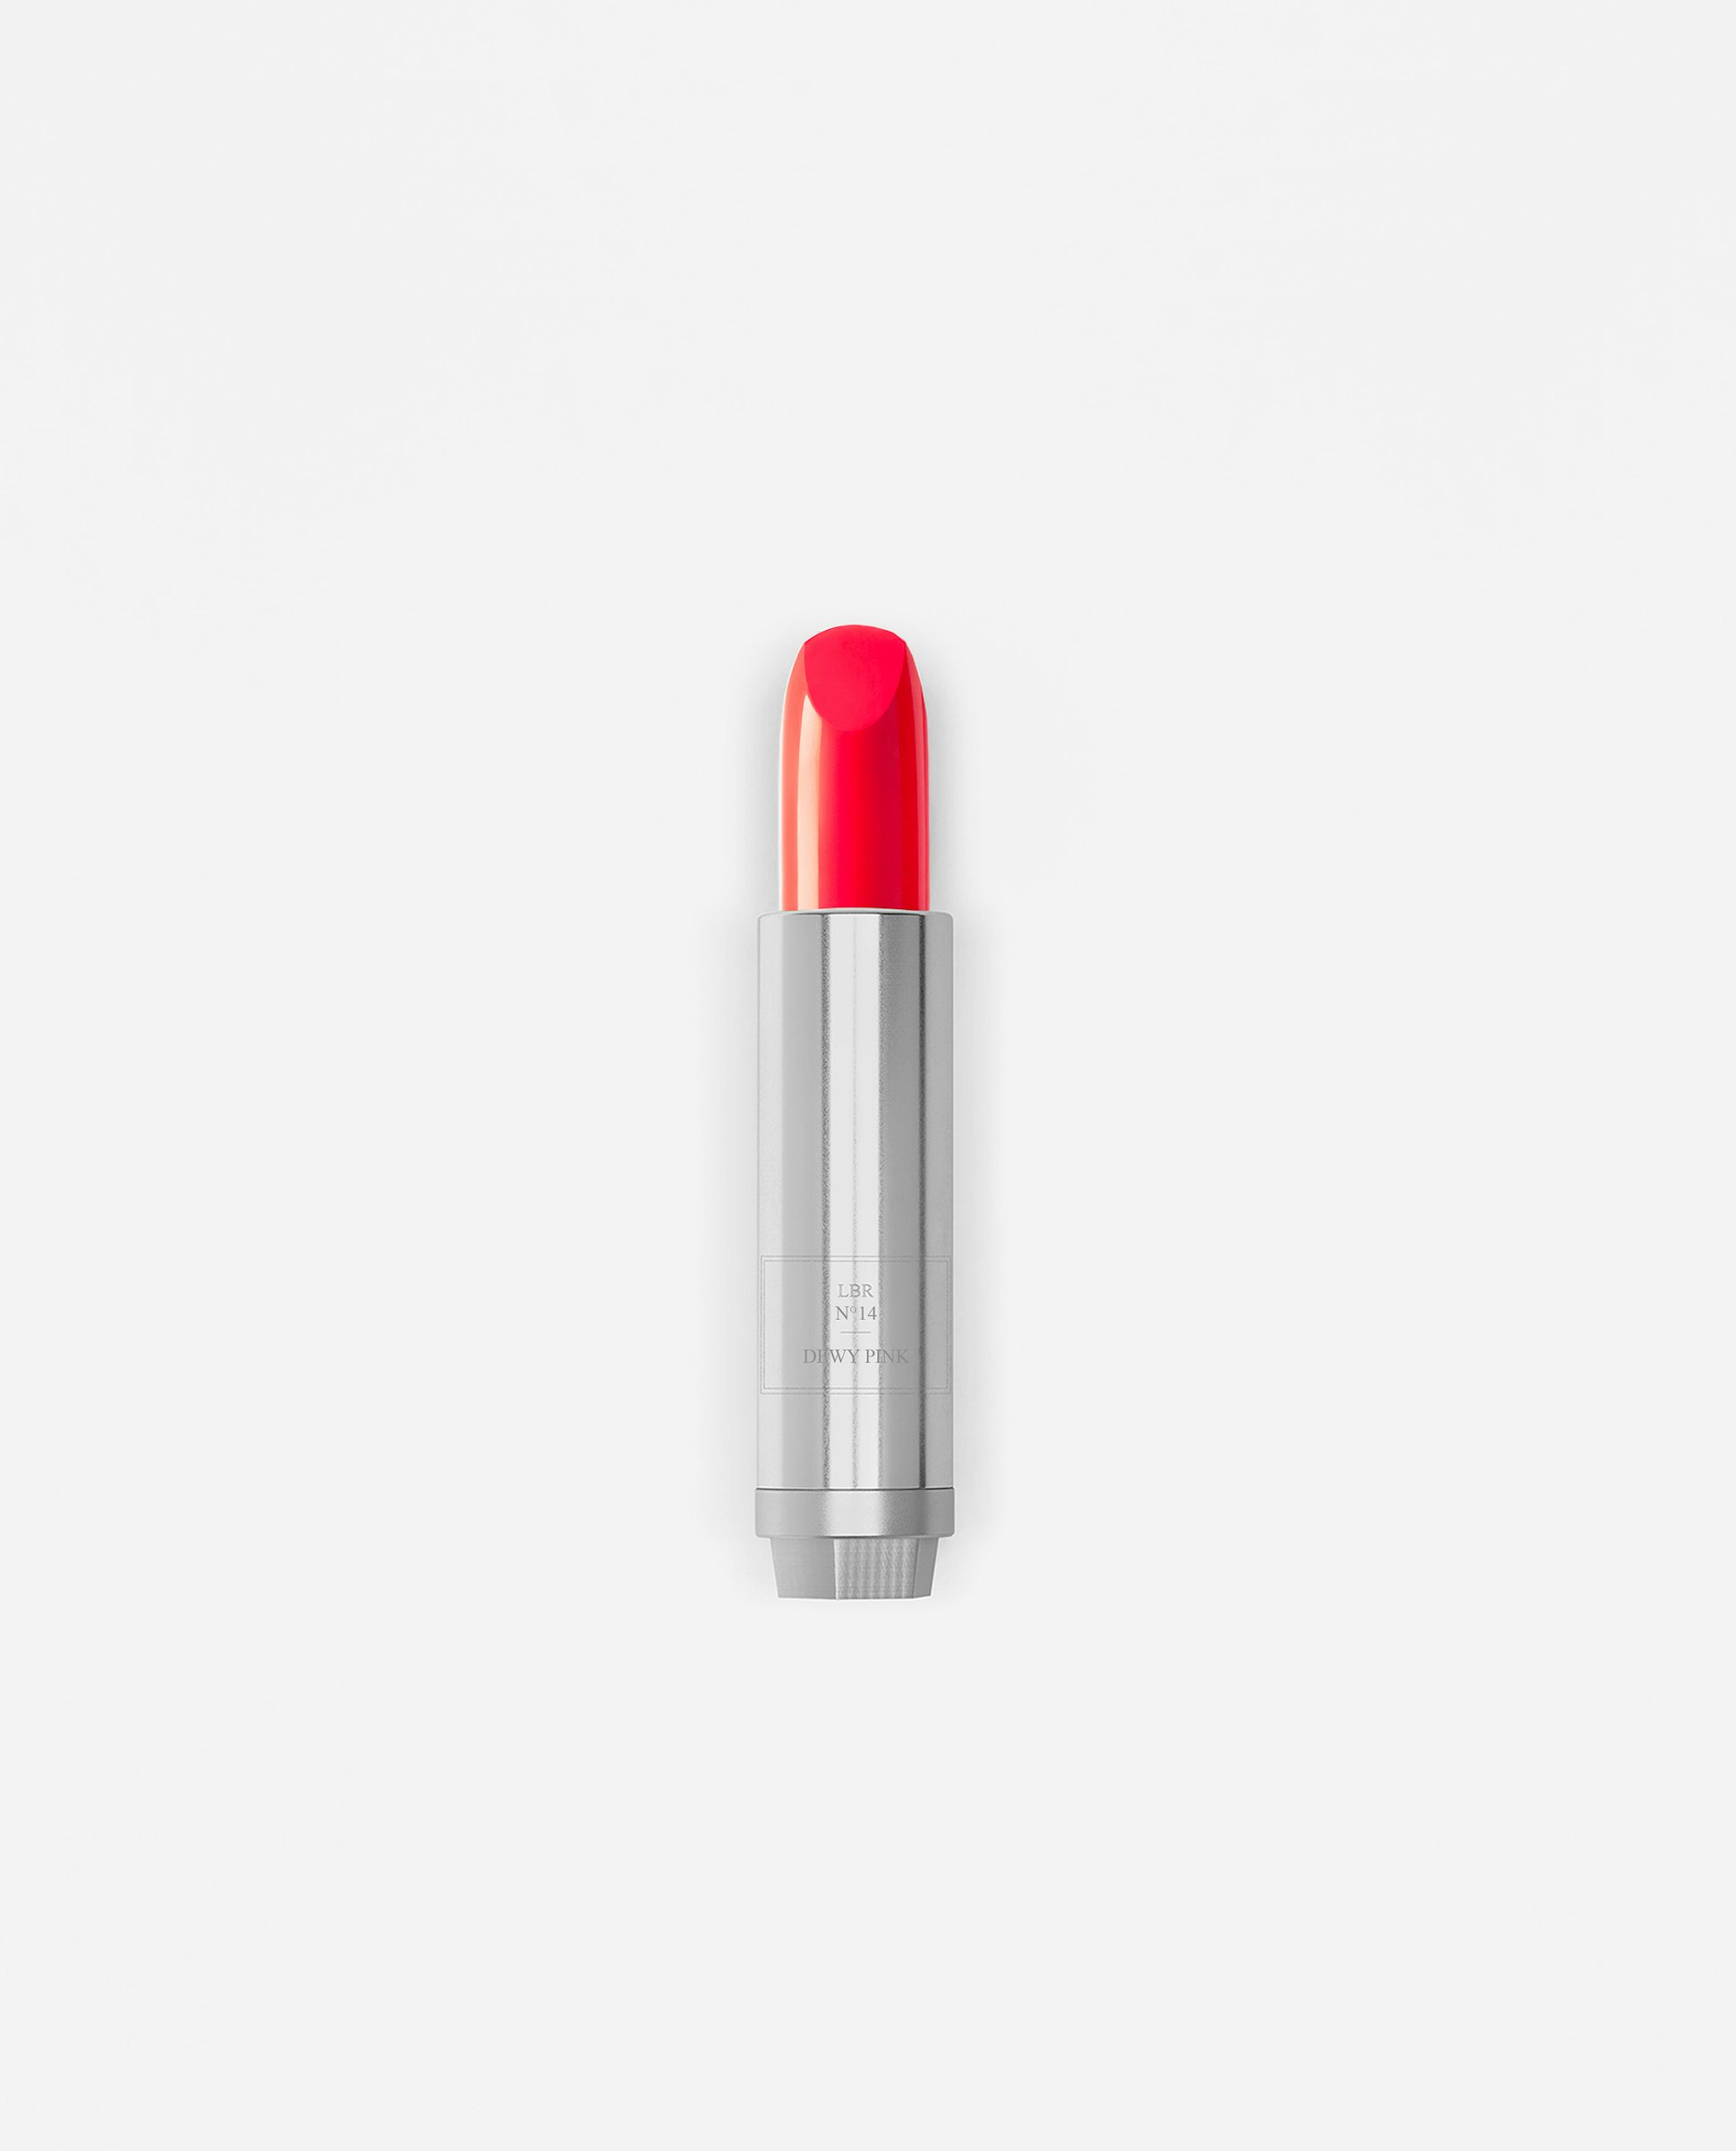 La bouche rouge Dewy Pink lipstick in metal refill